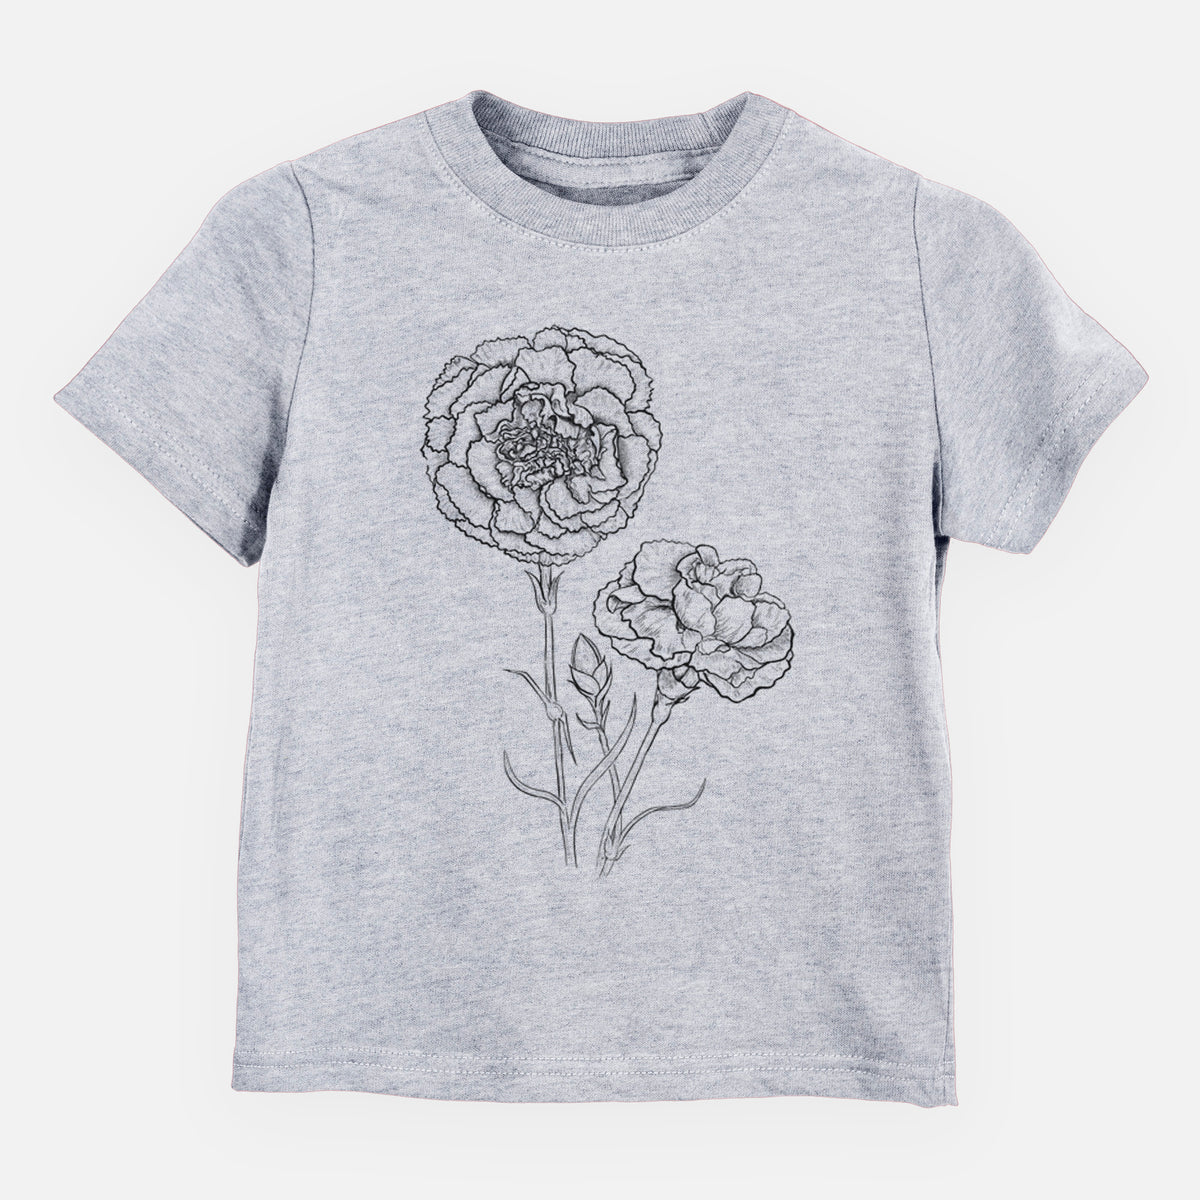 Carnations - Dianthus caryophyllus - Kids Shirt